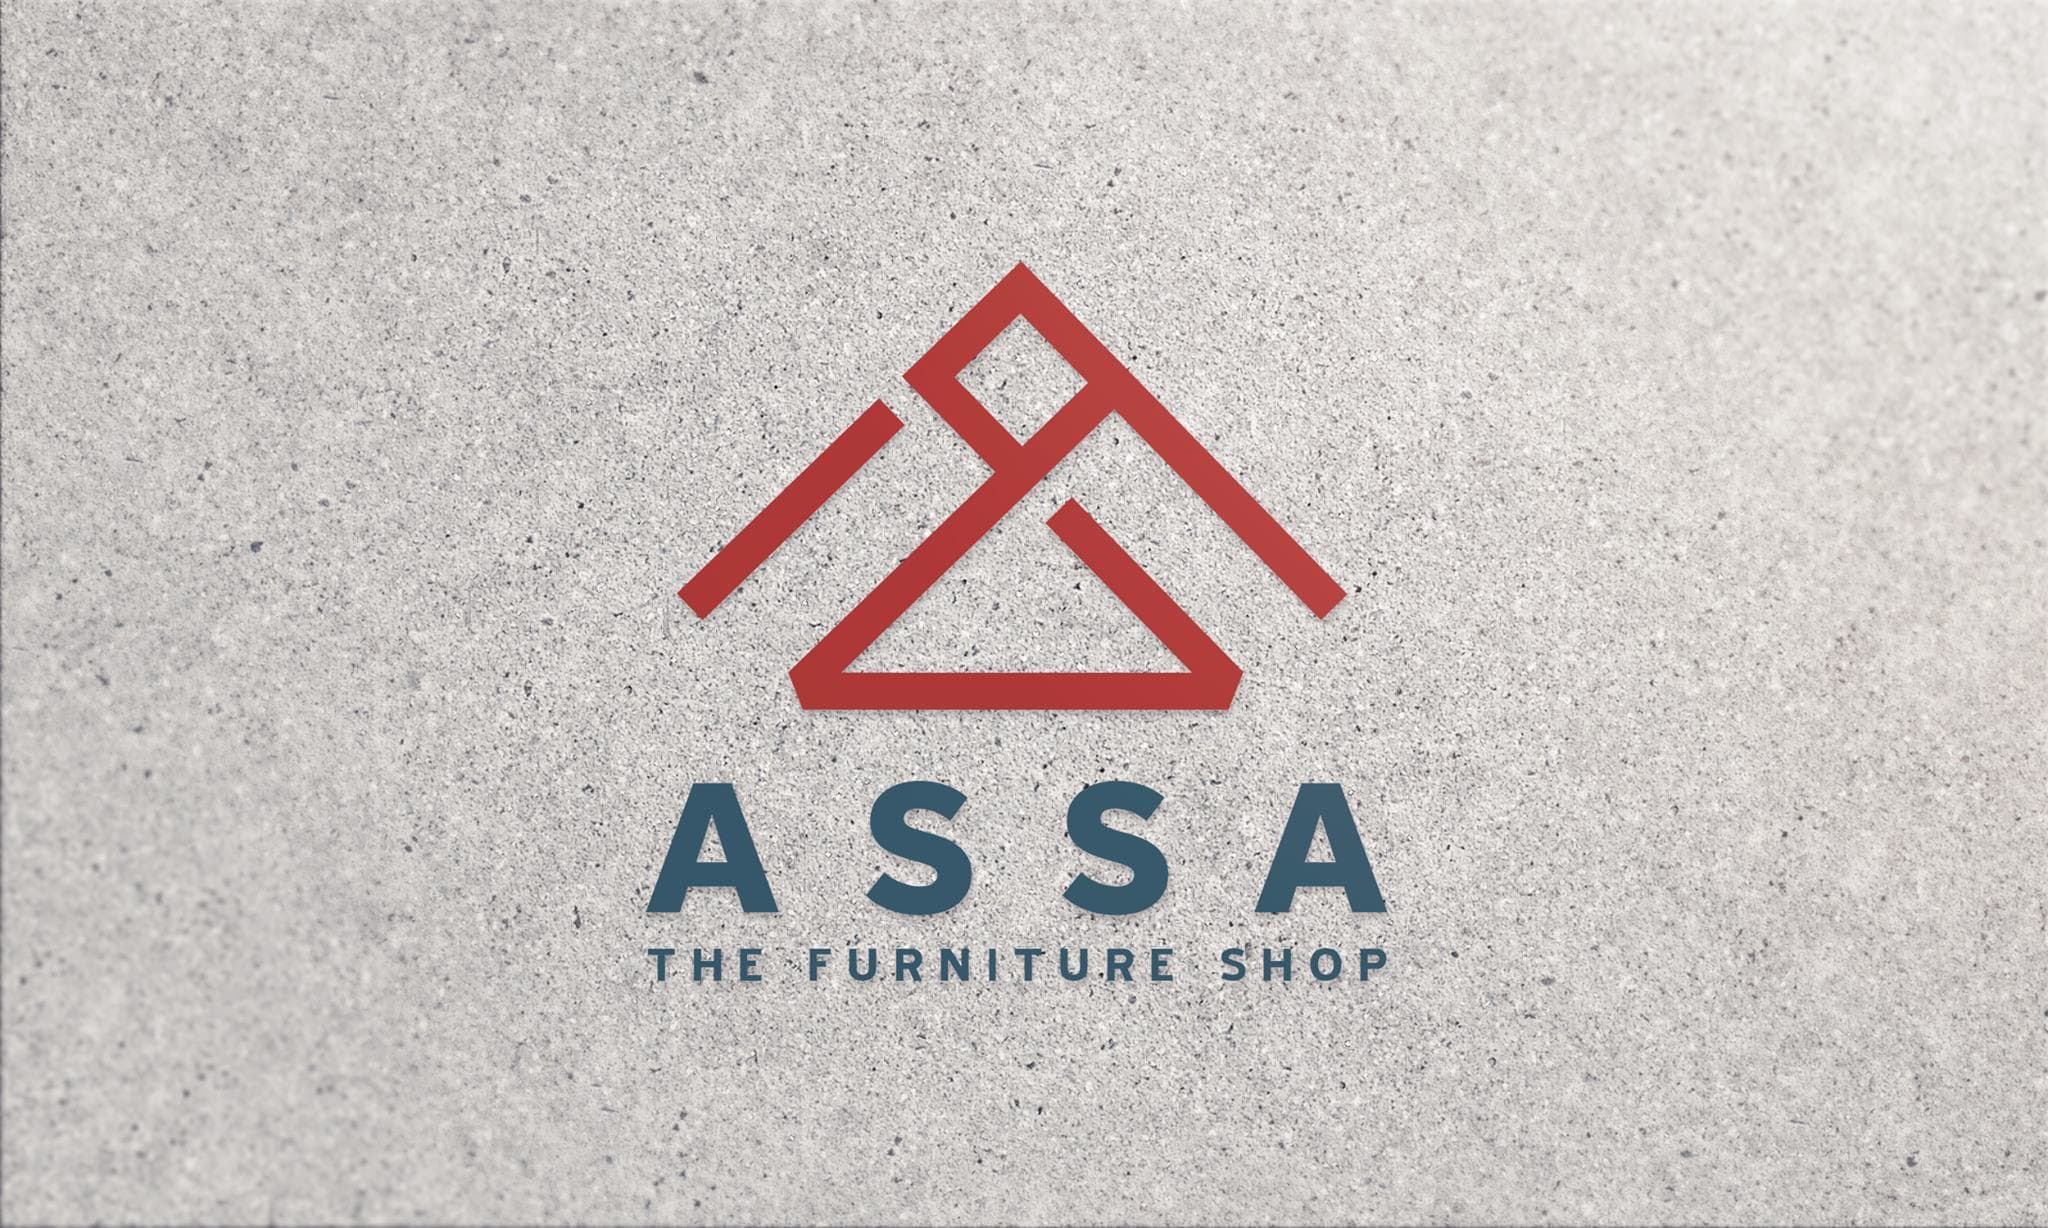 Assa The Furniture Shop